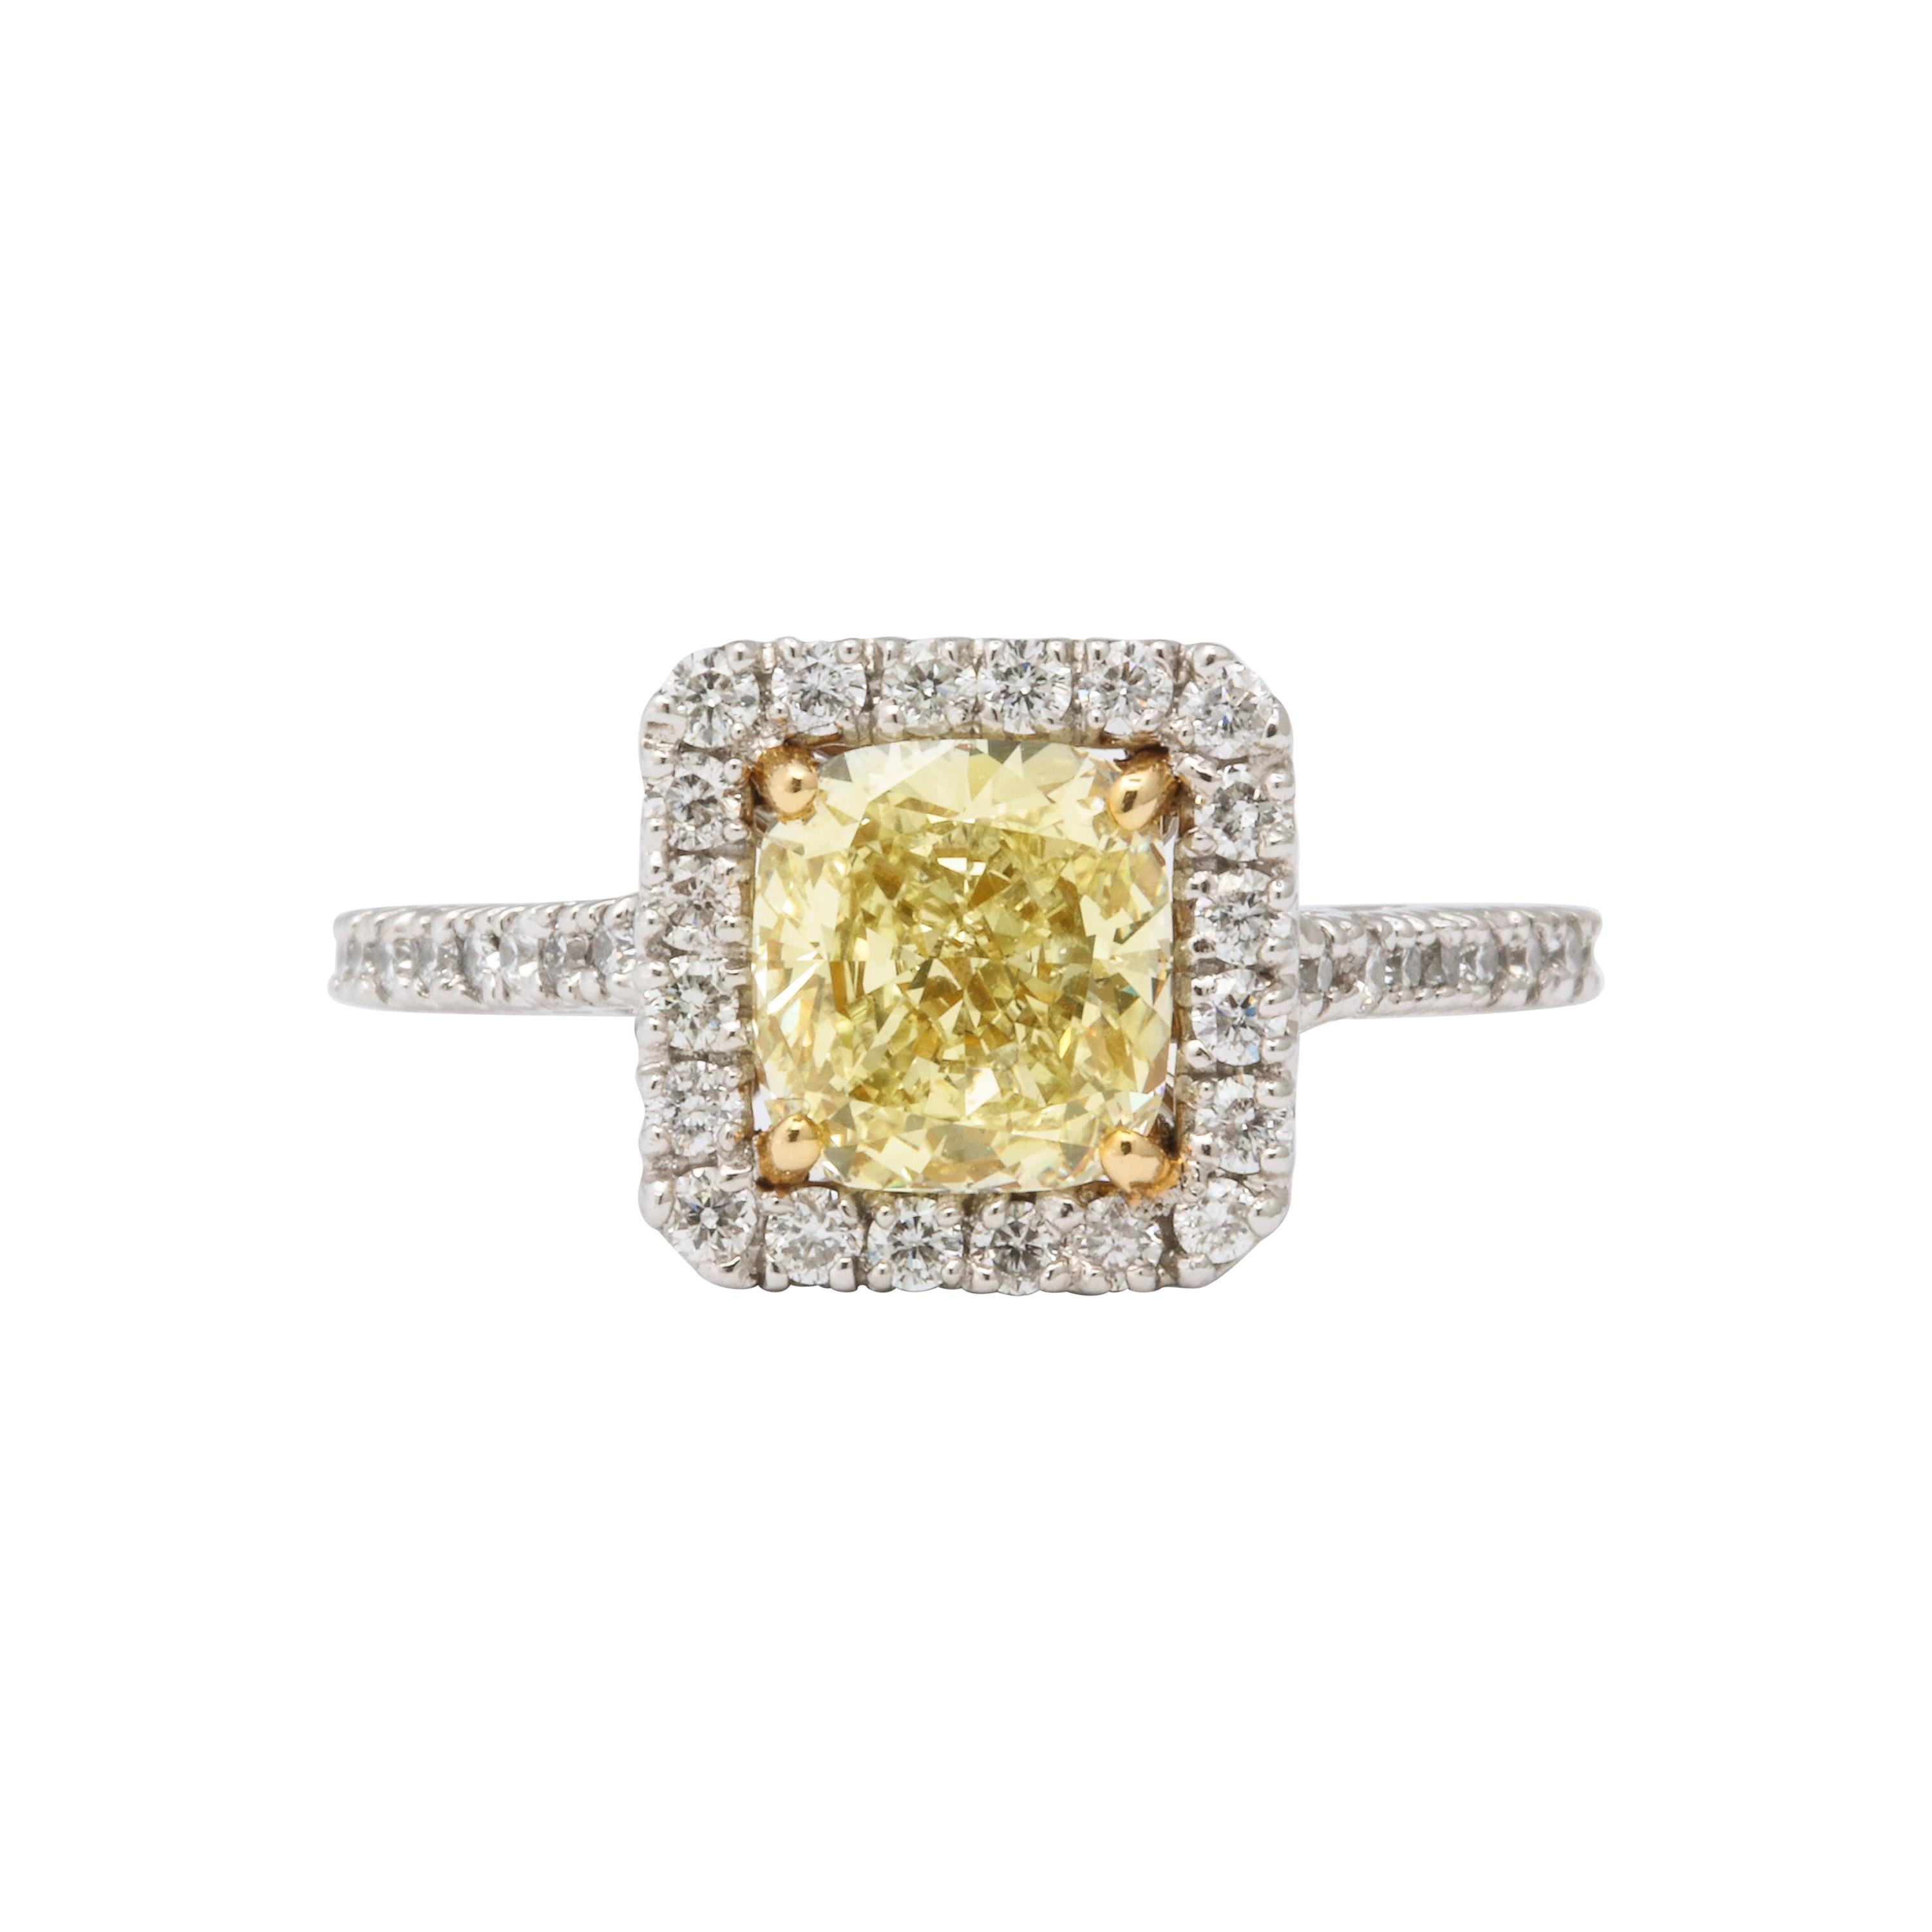 GIA Certified 1.71 Carat Yellow Diamond Engagement Ring